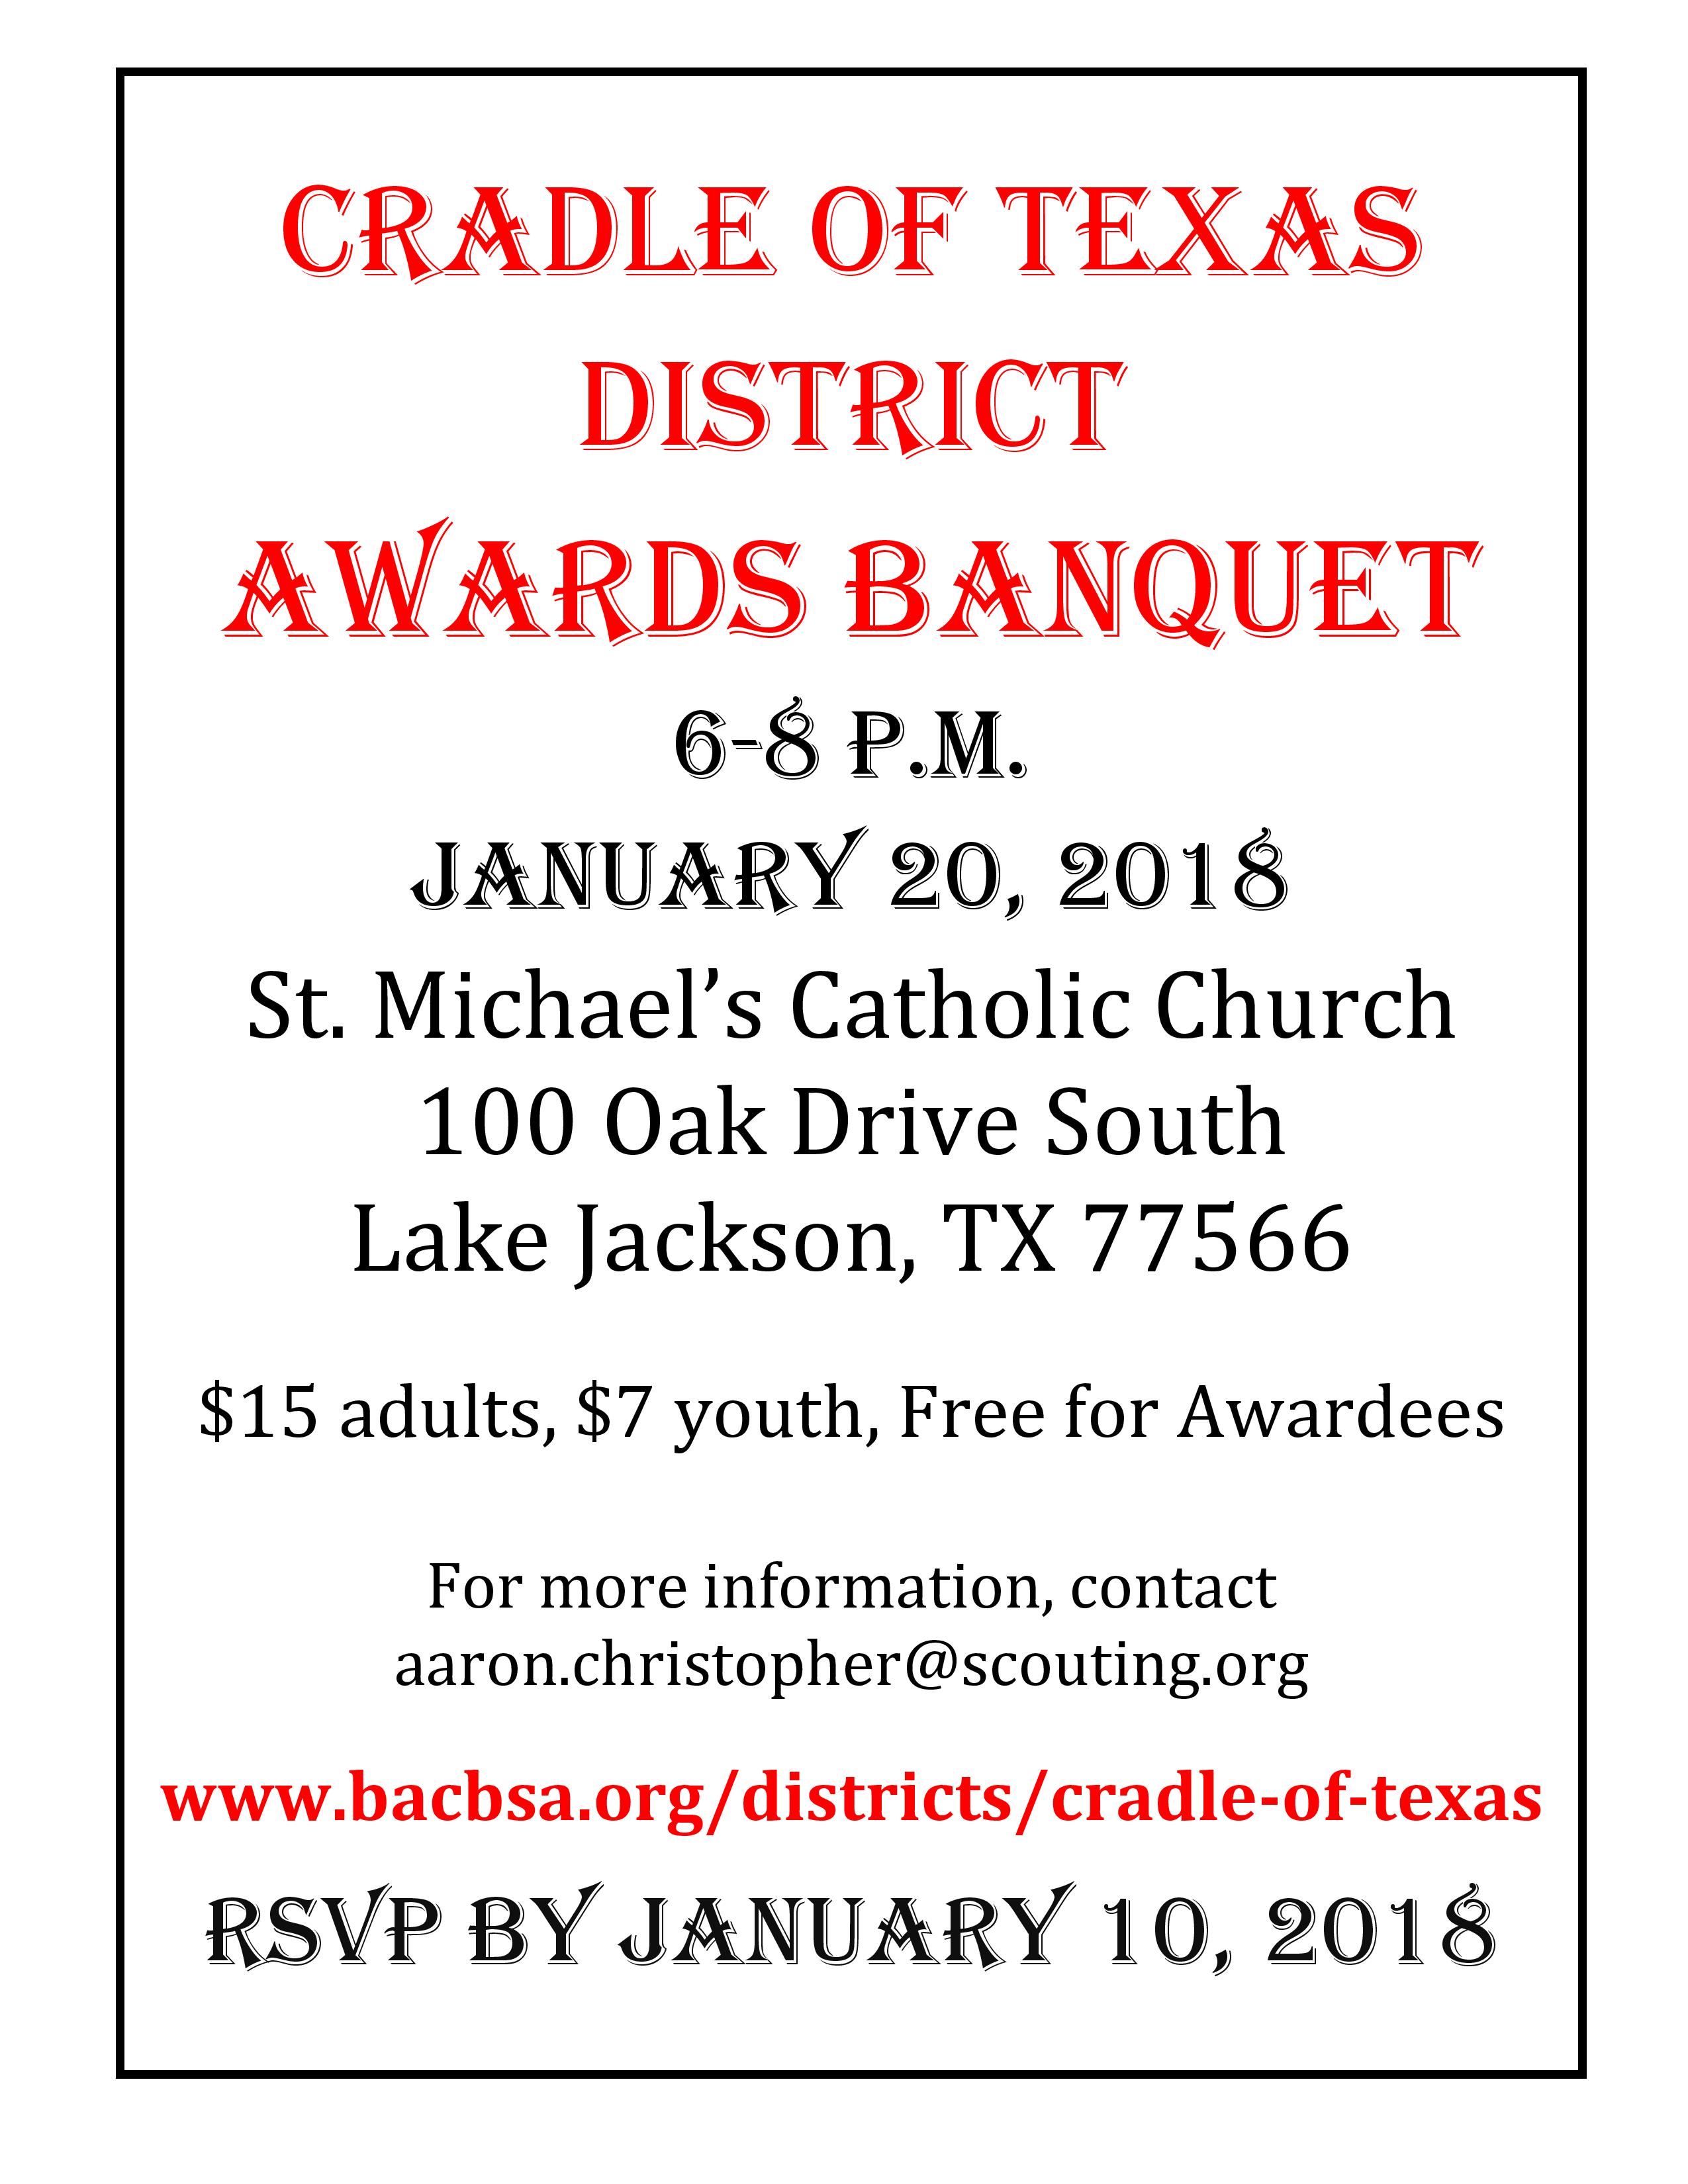 Cradle of Texas Banquet